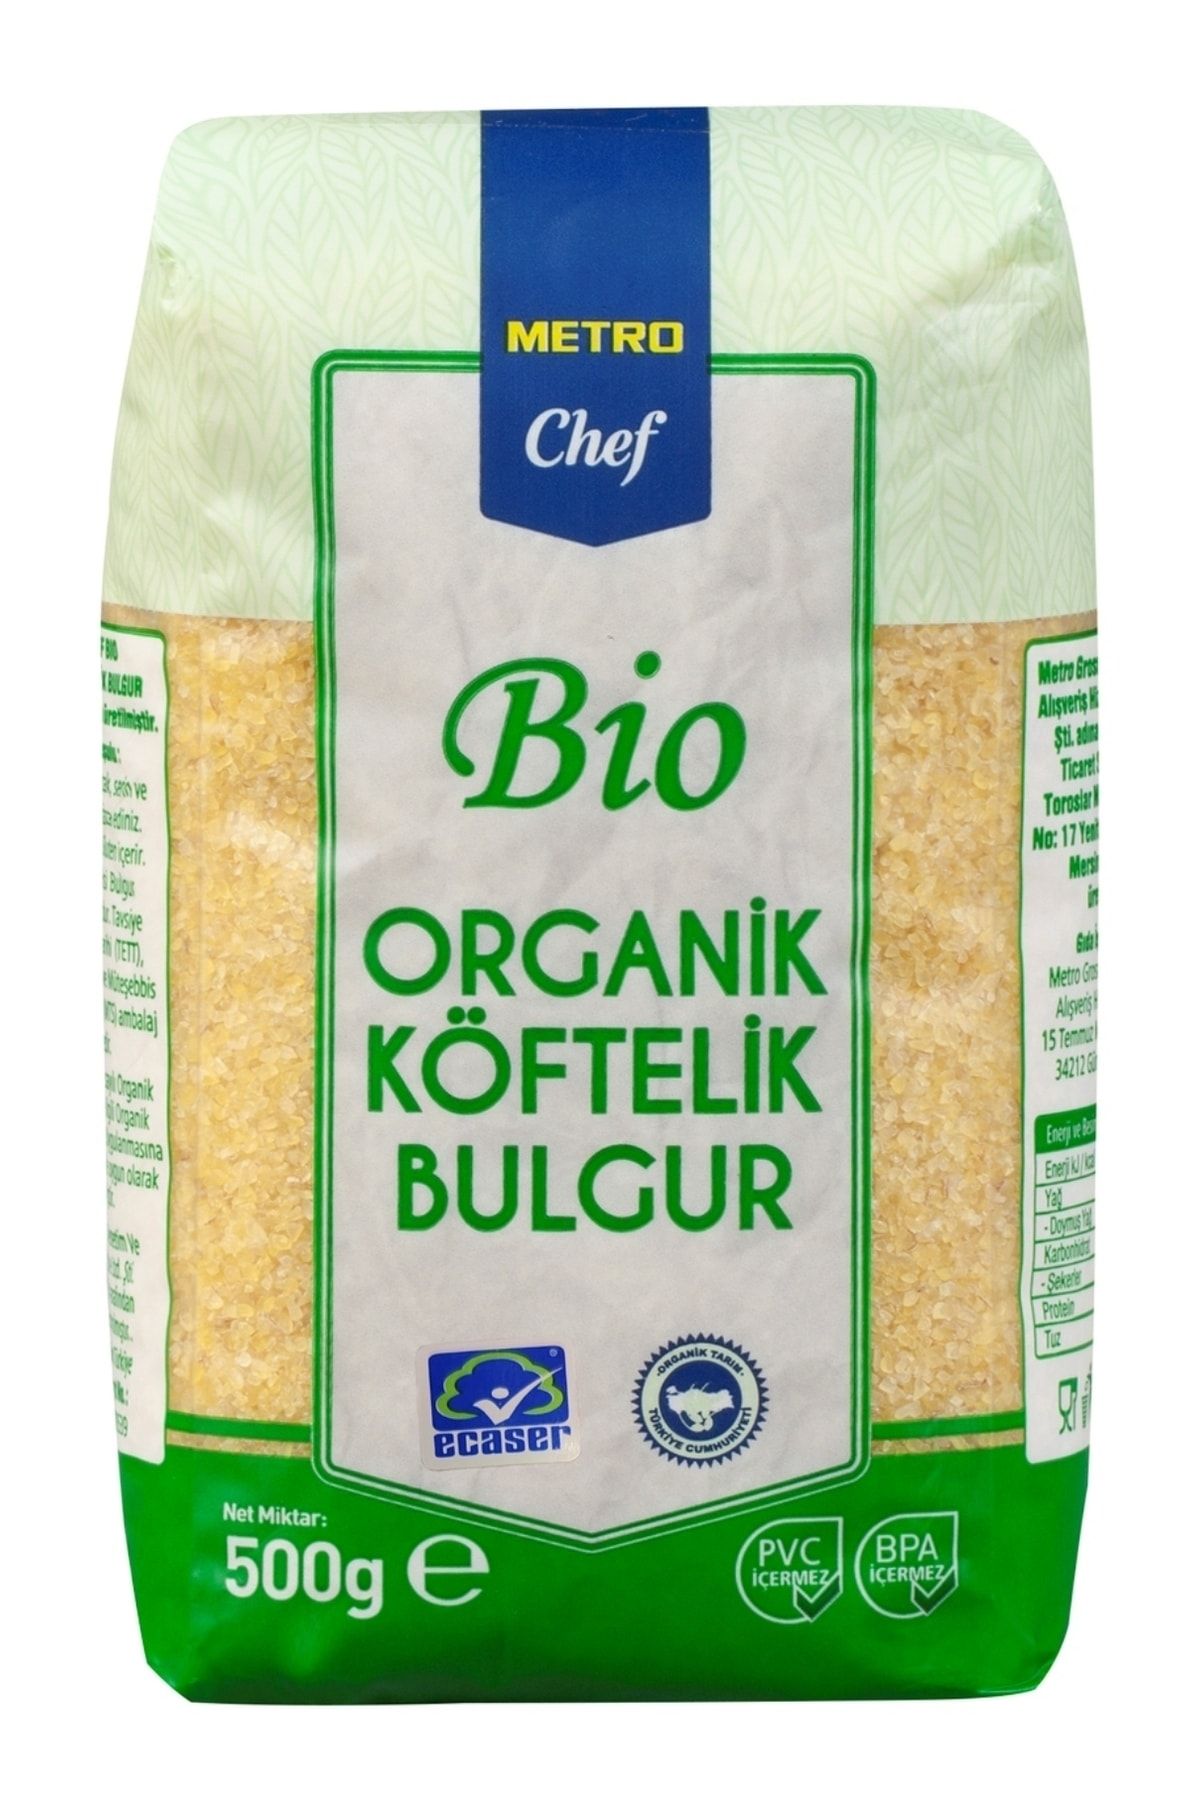 Metro Chef Bio Organik Köftelik Bulgur - 500g